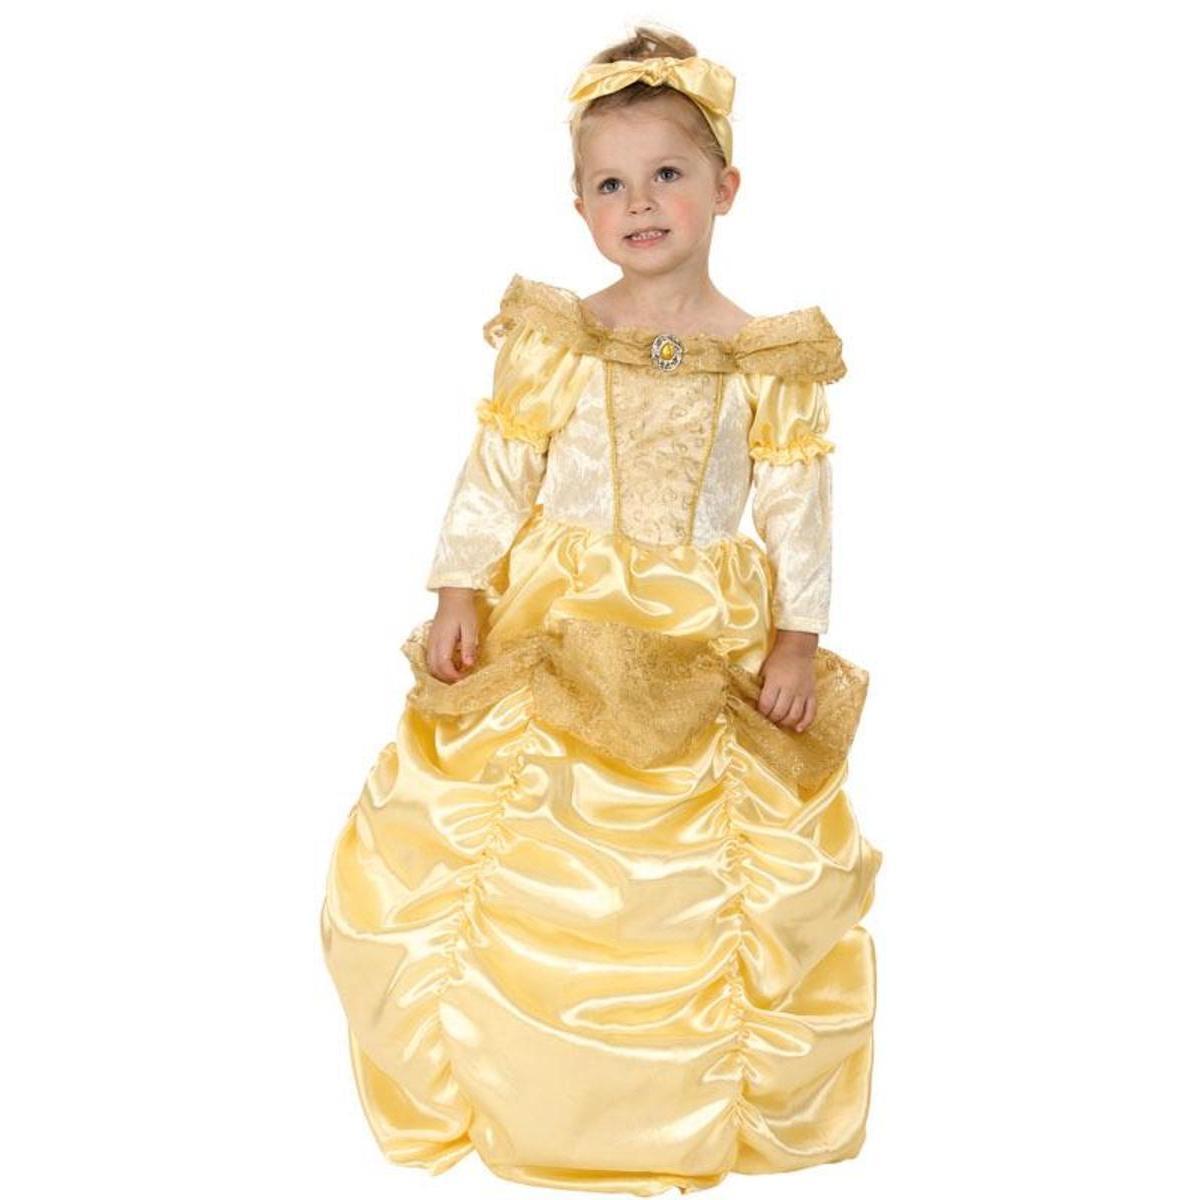 Costume de Belle princesse - Taille bébé (80 à 92 cm) - L 48 x H 3 x l 44 cm - Multicolore - PTIT CLOWN